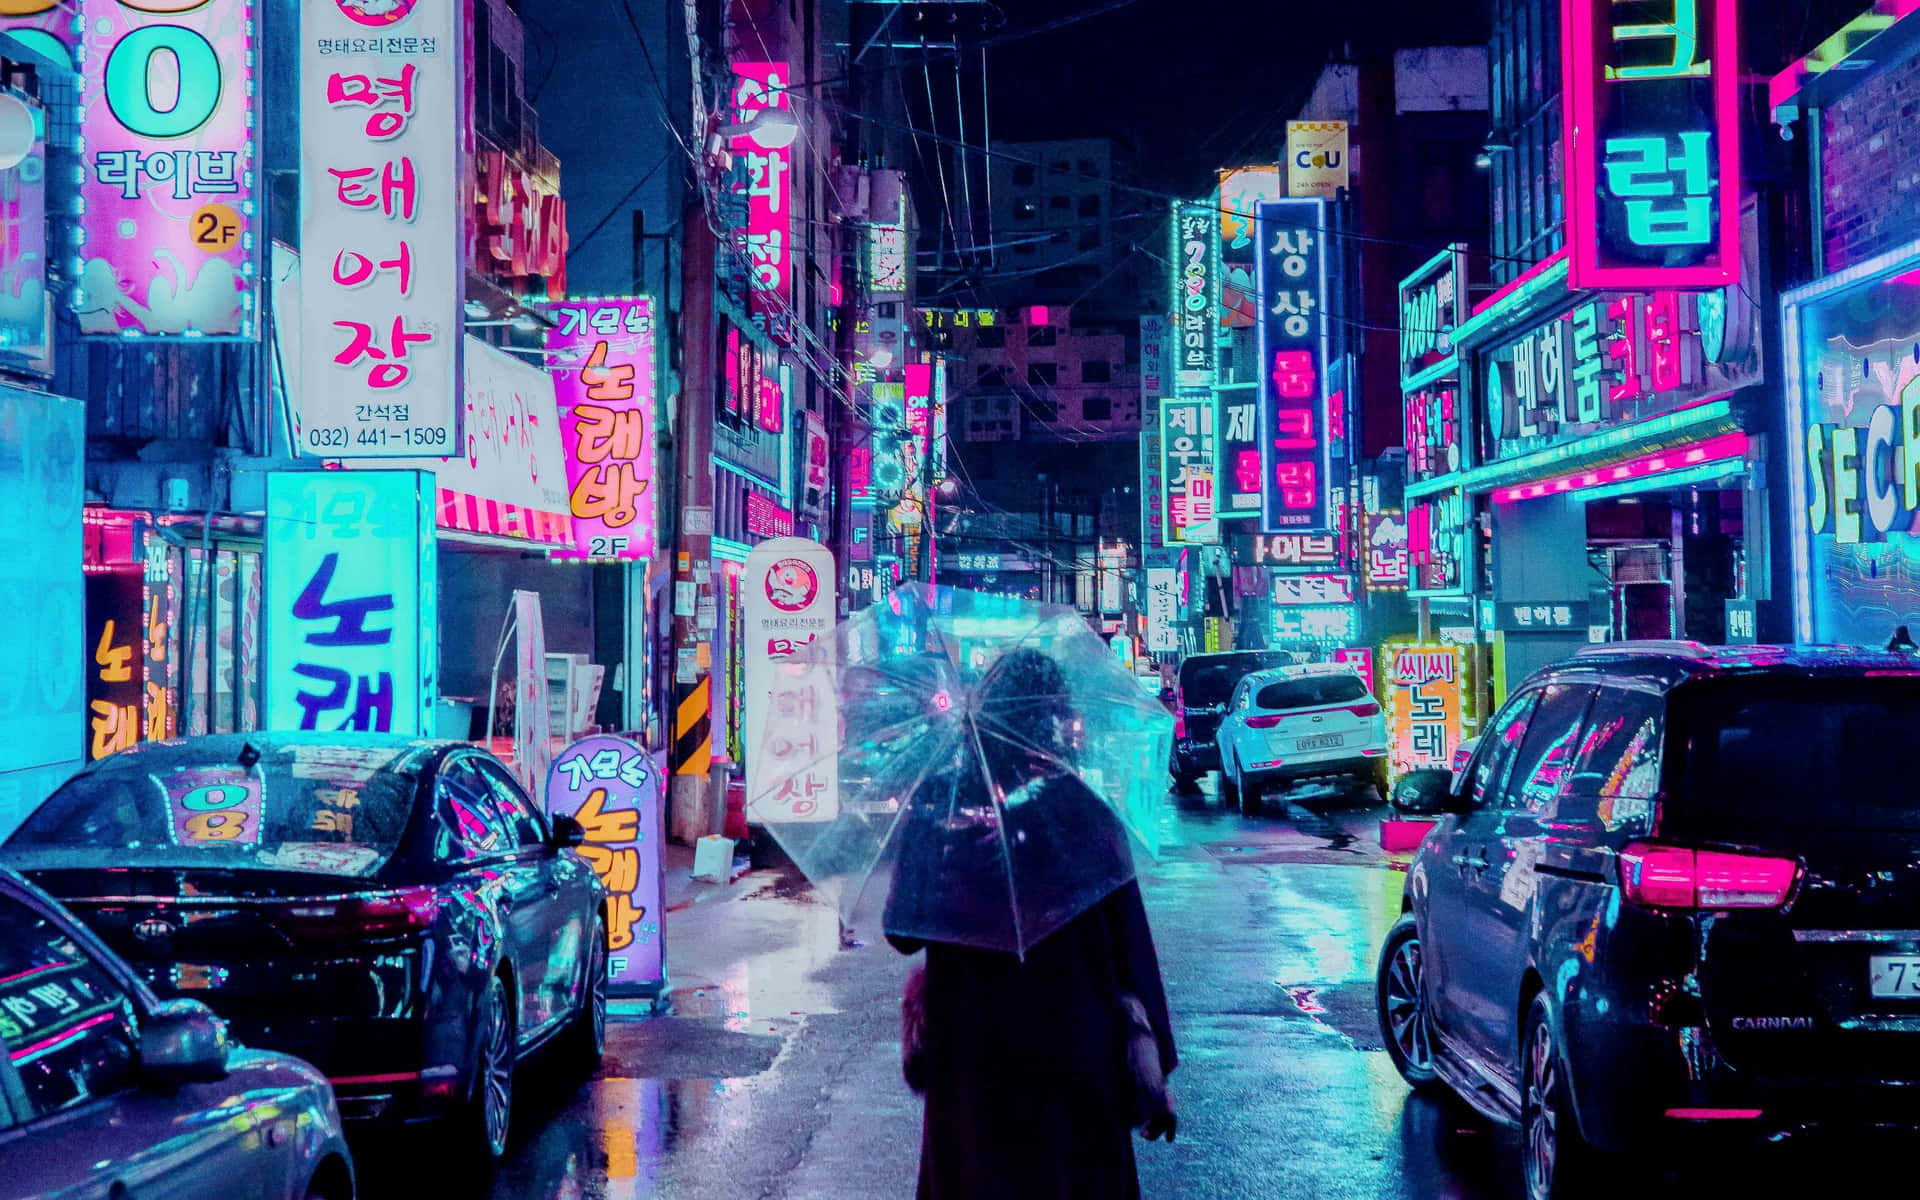 Koreanischeneonlichter Tumblr Laptop Wallpaper